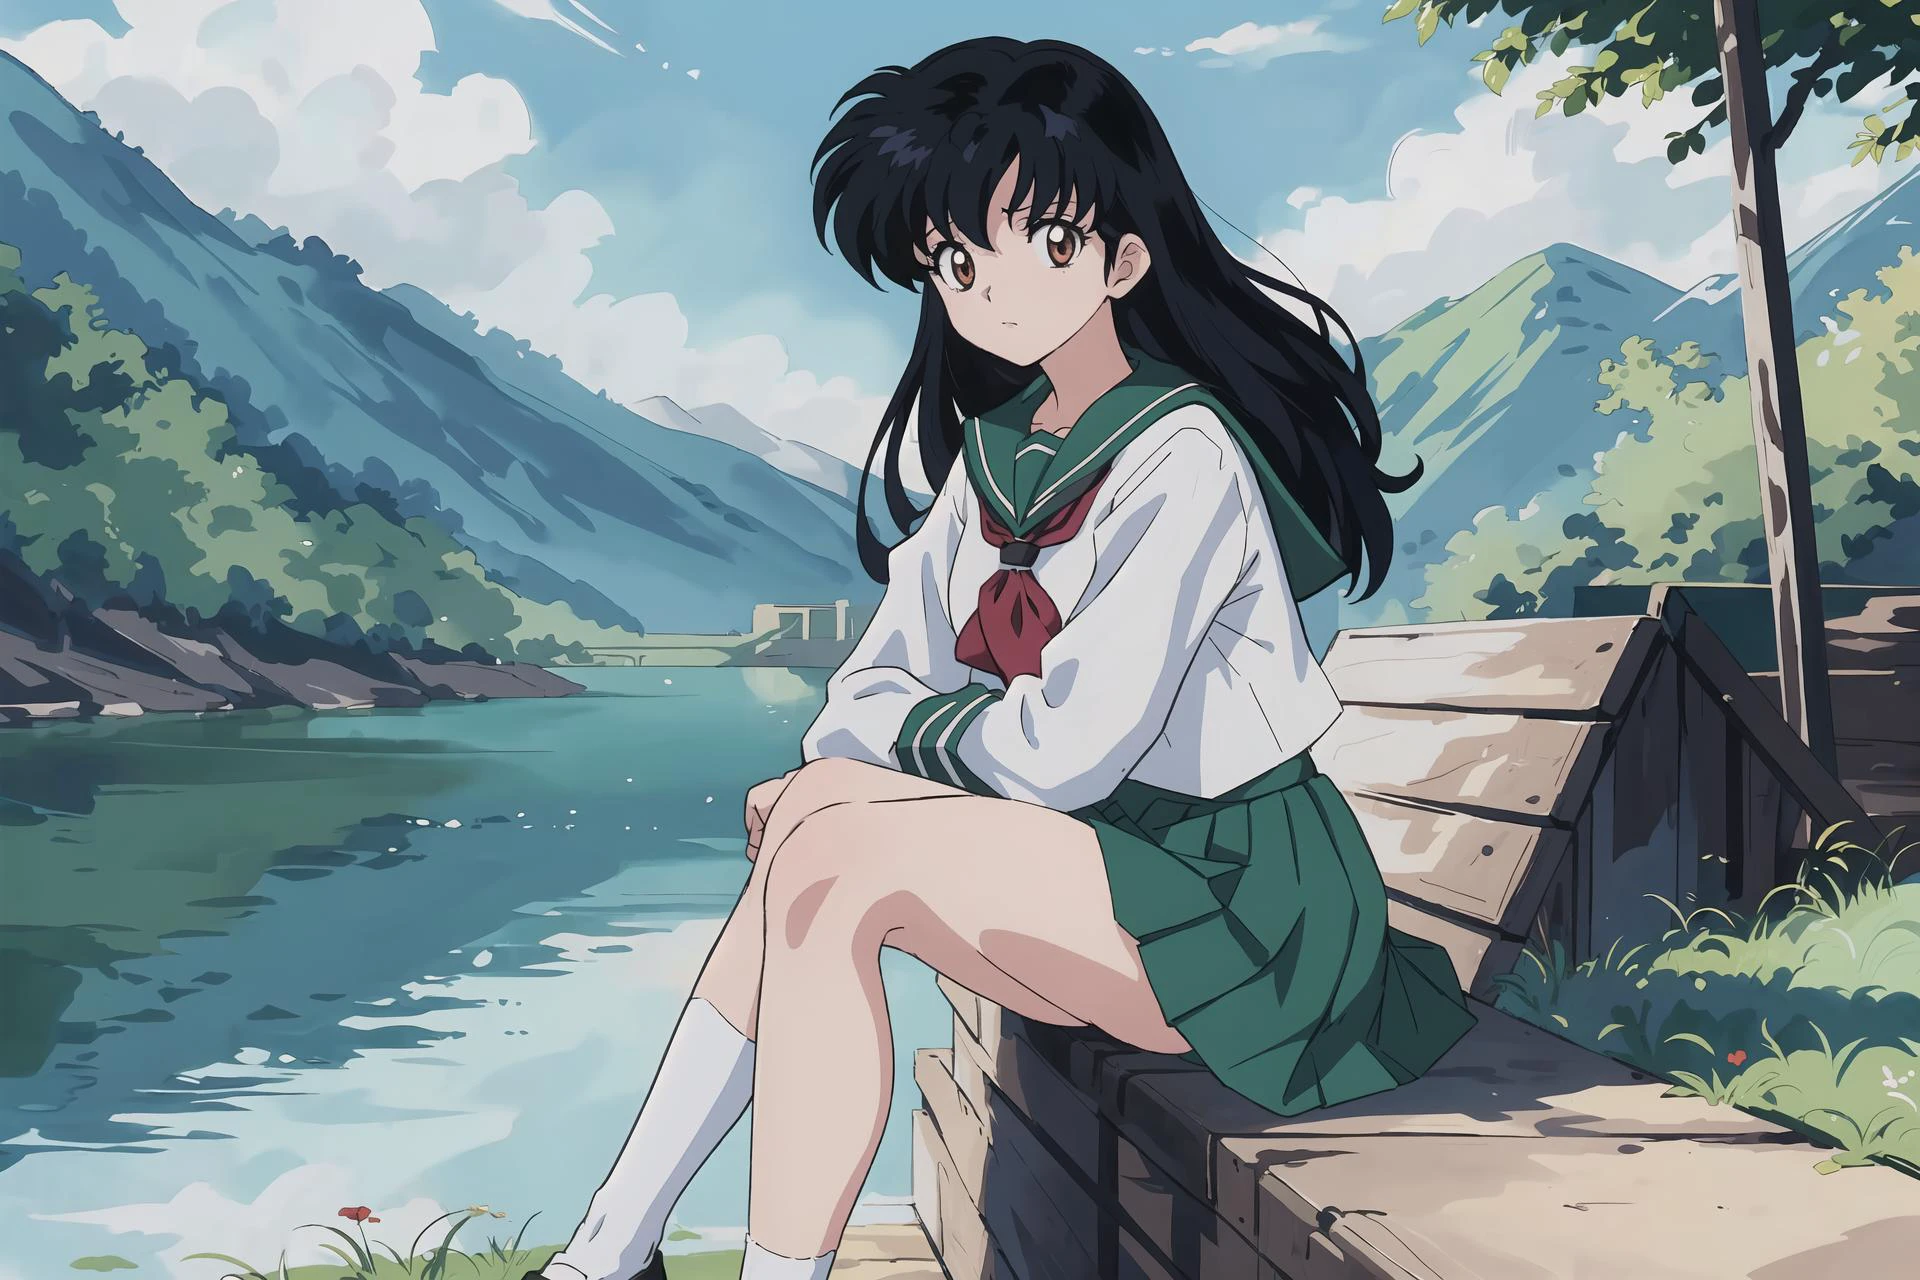 (最高品質, 傑作, 高解像度), Kagome Higurashi, 1人の女の子, 一人で, 緑 , 裸足, 長袖, 白い靴下, 座っている, 景色,
